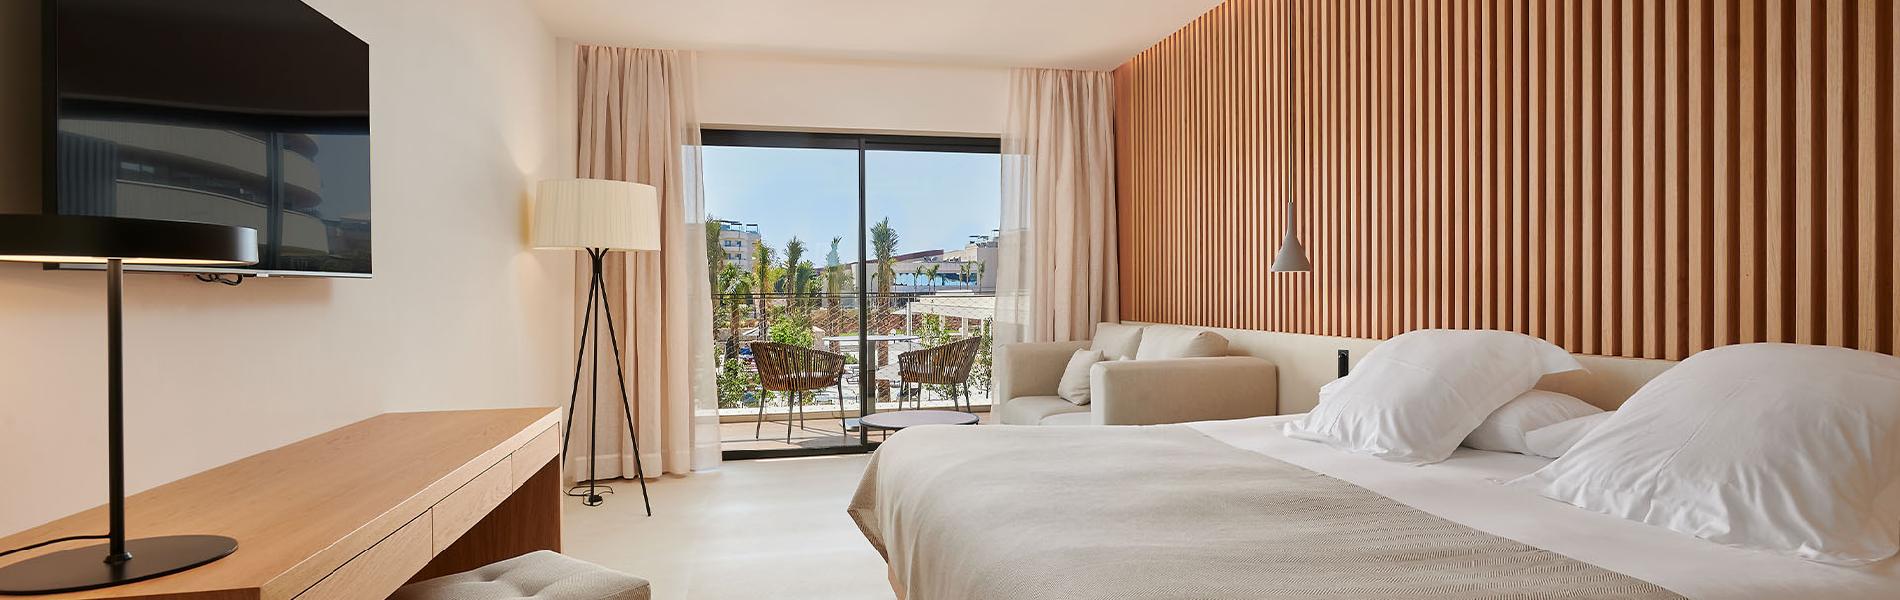 double-room-garden-bulding-view-protur-biomar-hotel-sensatori